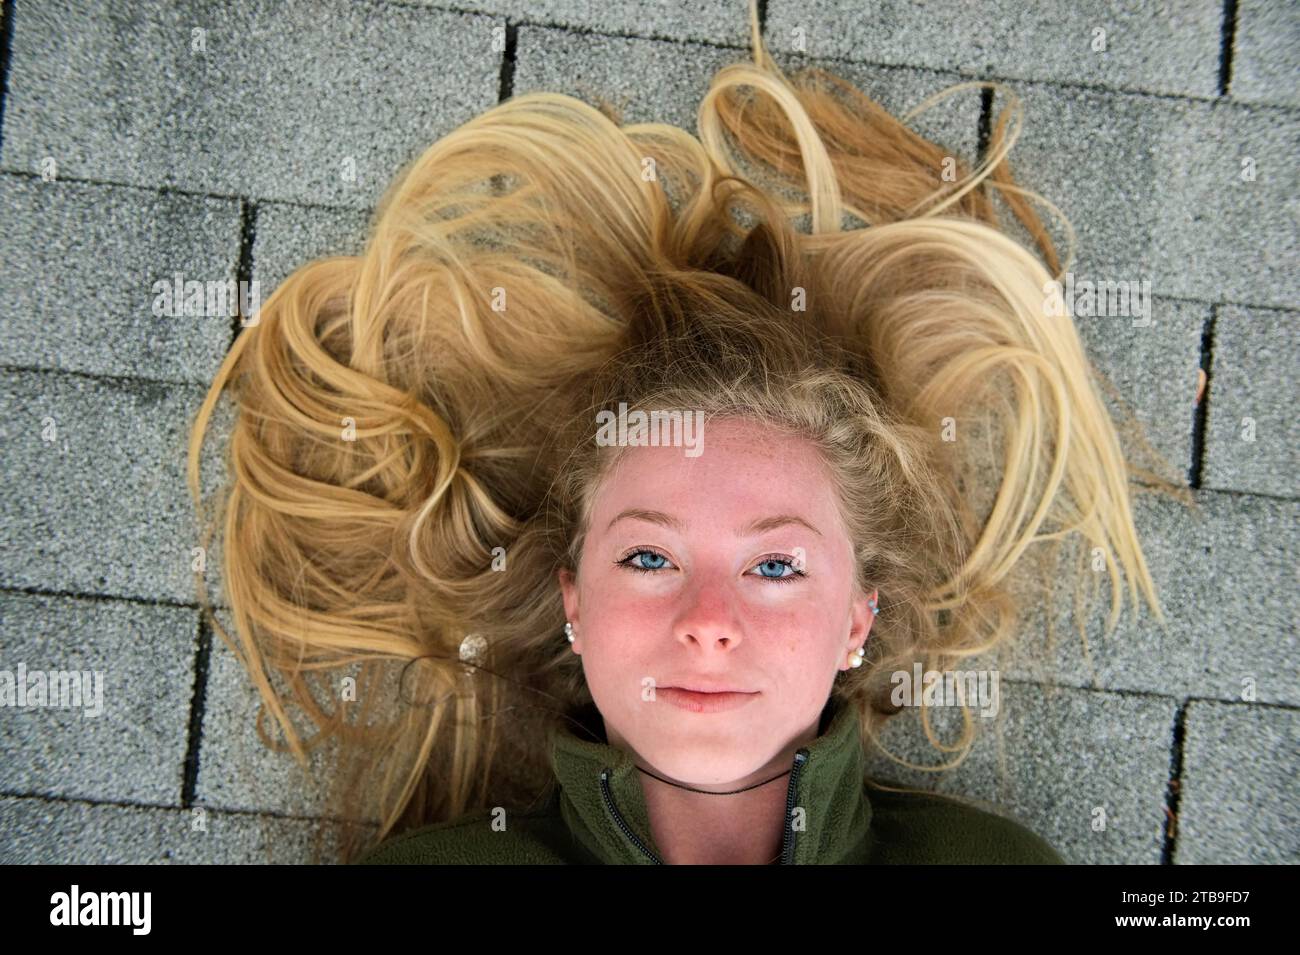 Adolescente aux longs cheveux blonds repose sur un toit en bardeaux ; Elkhorn, Nebraska, États-Unis d'Amérique Banque D'Images